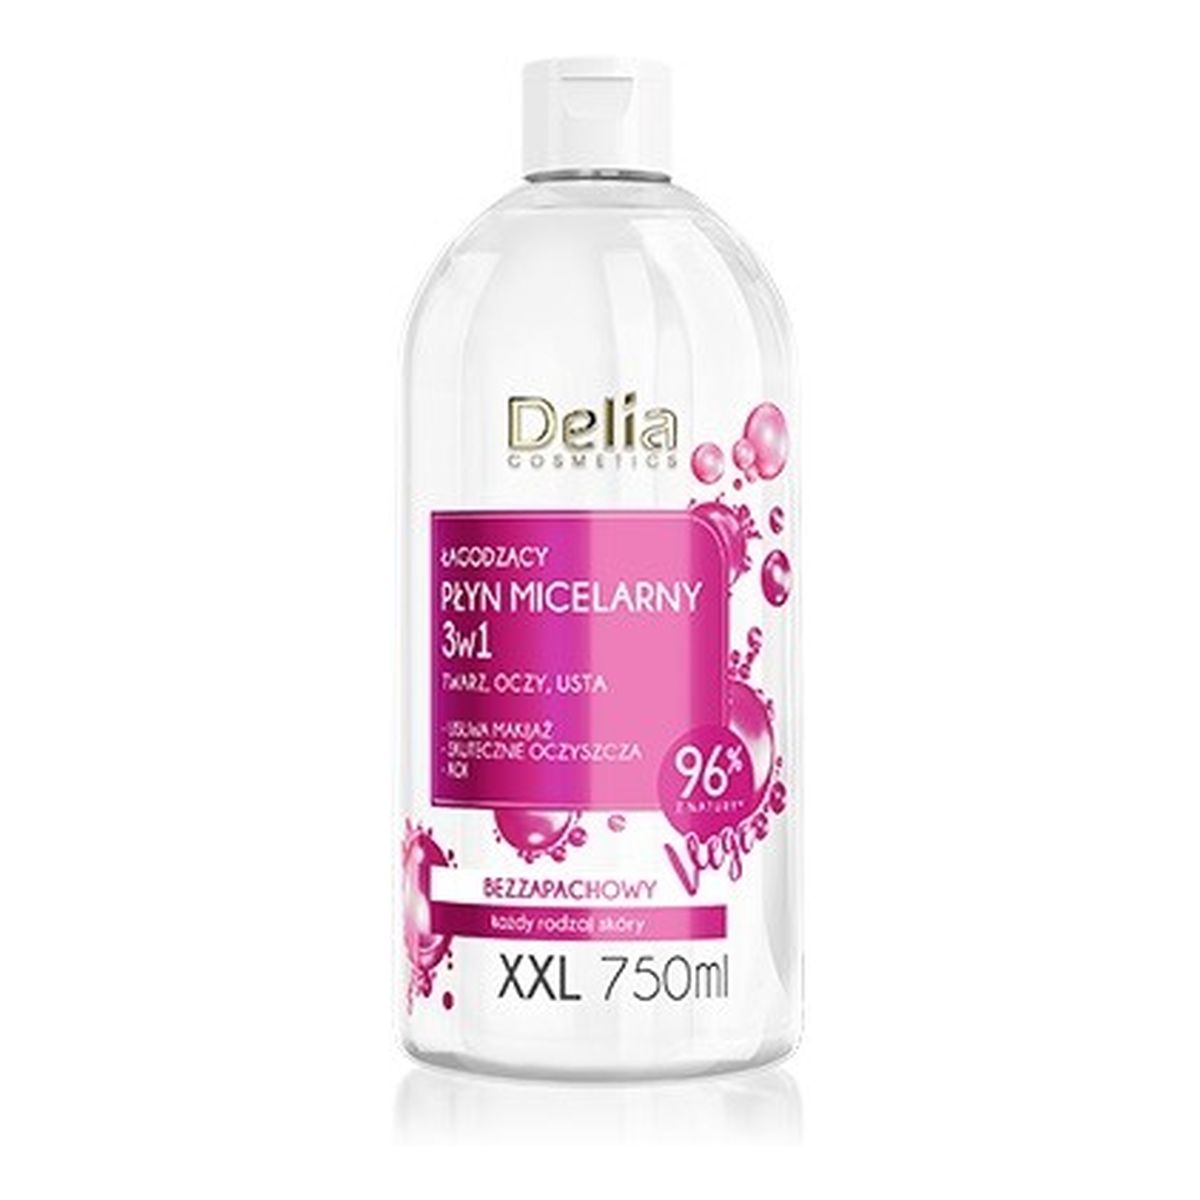 Delia Cosmetics łagodzący płyn micelarny 3w1 xxl 750ml